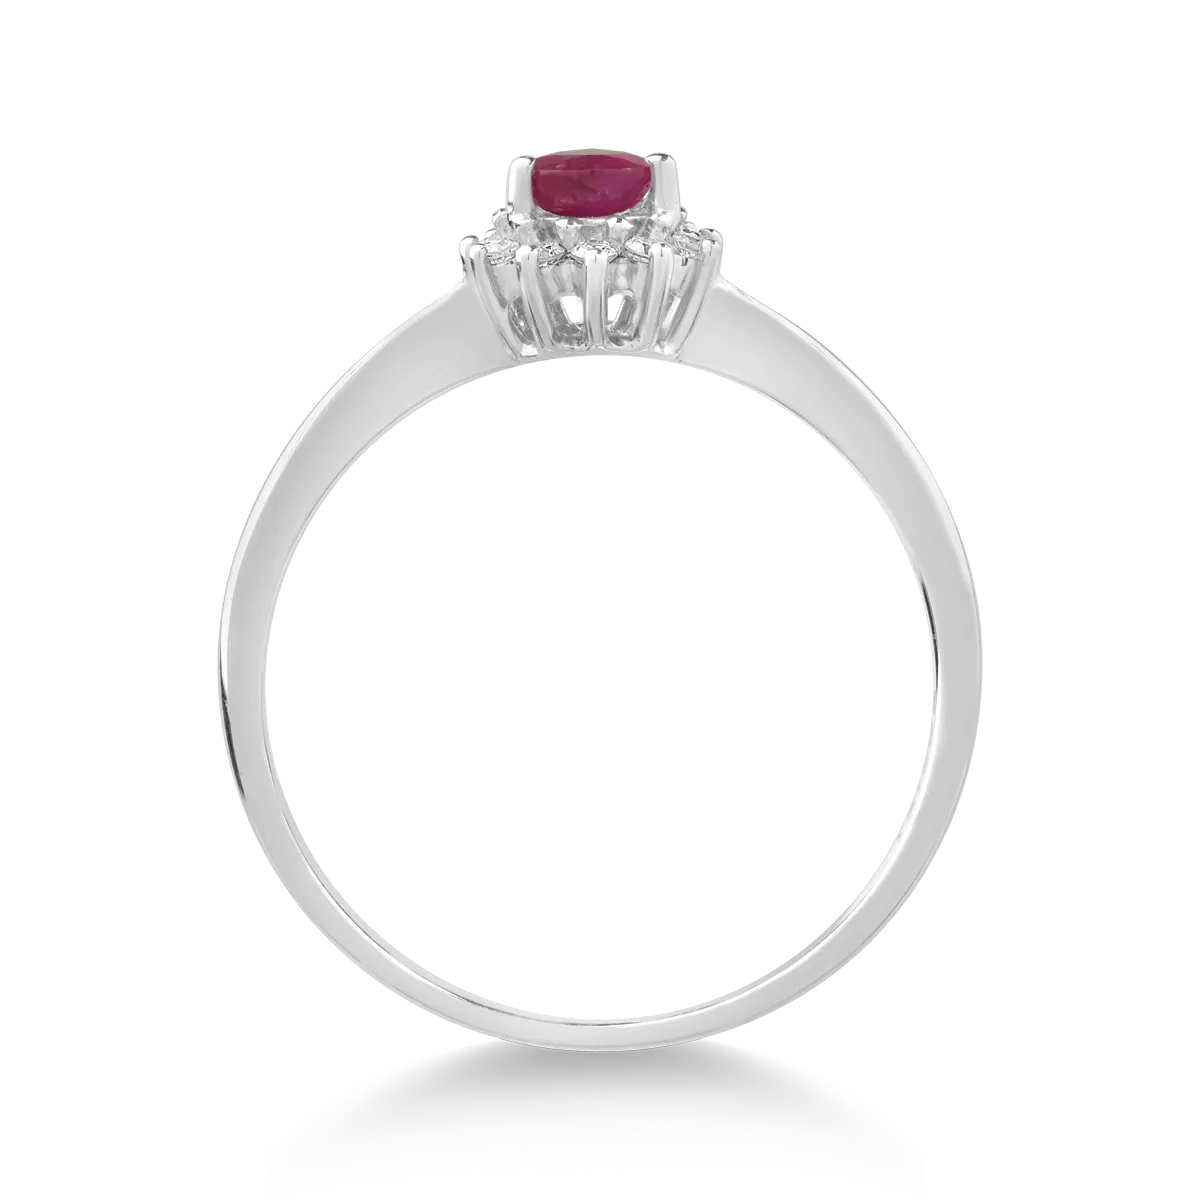 18K fehérarany gyűrű 0.324ct és 0.086ct gyémánt rubinnal